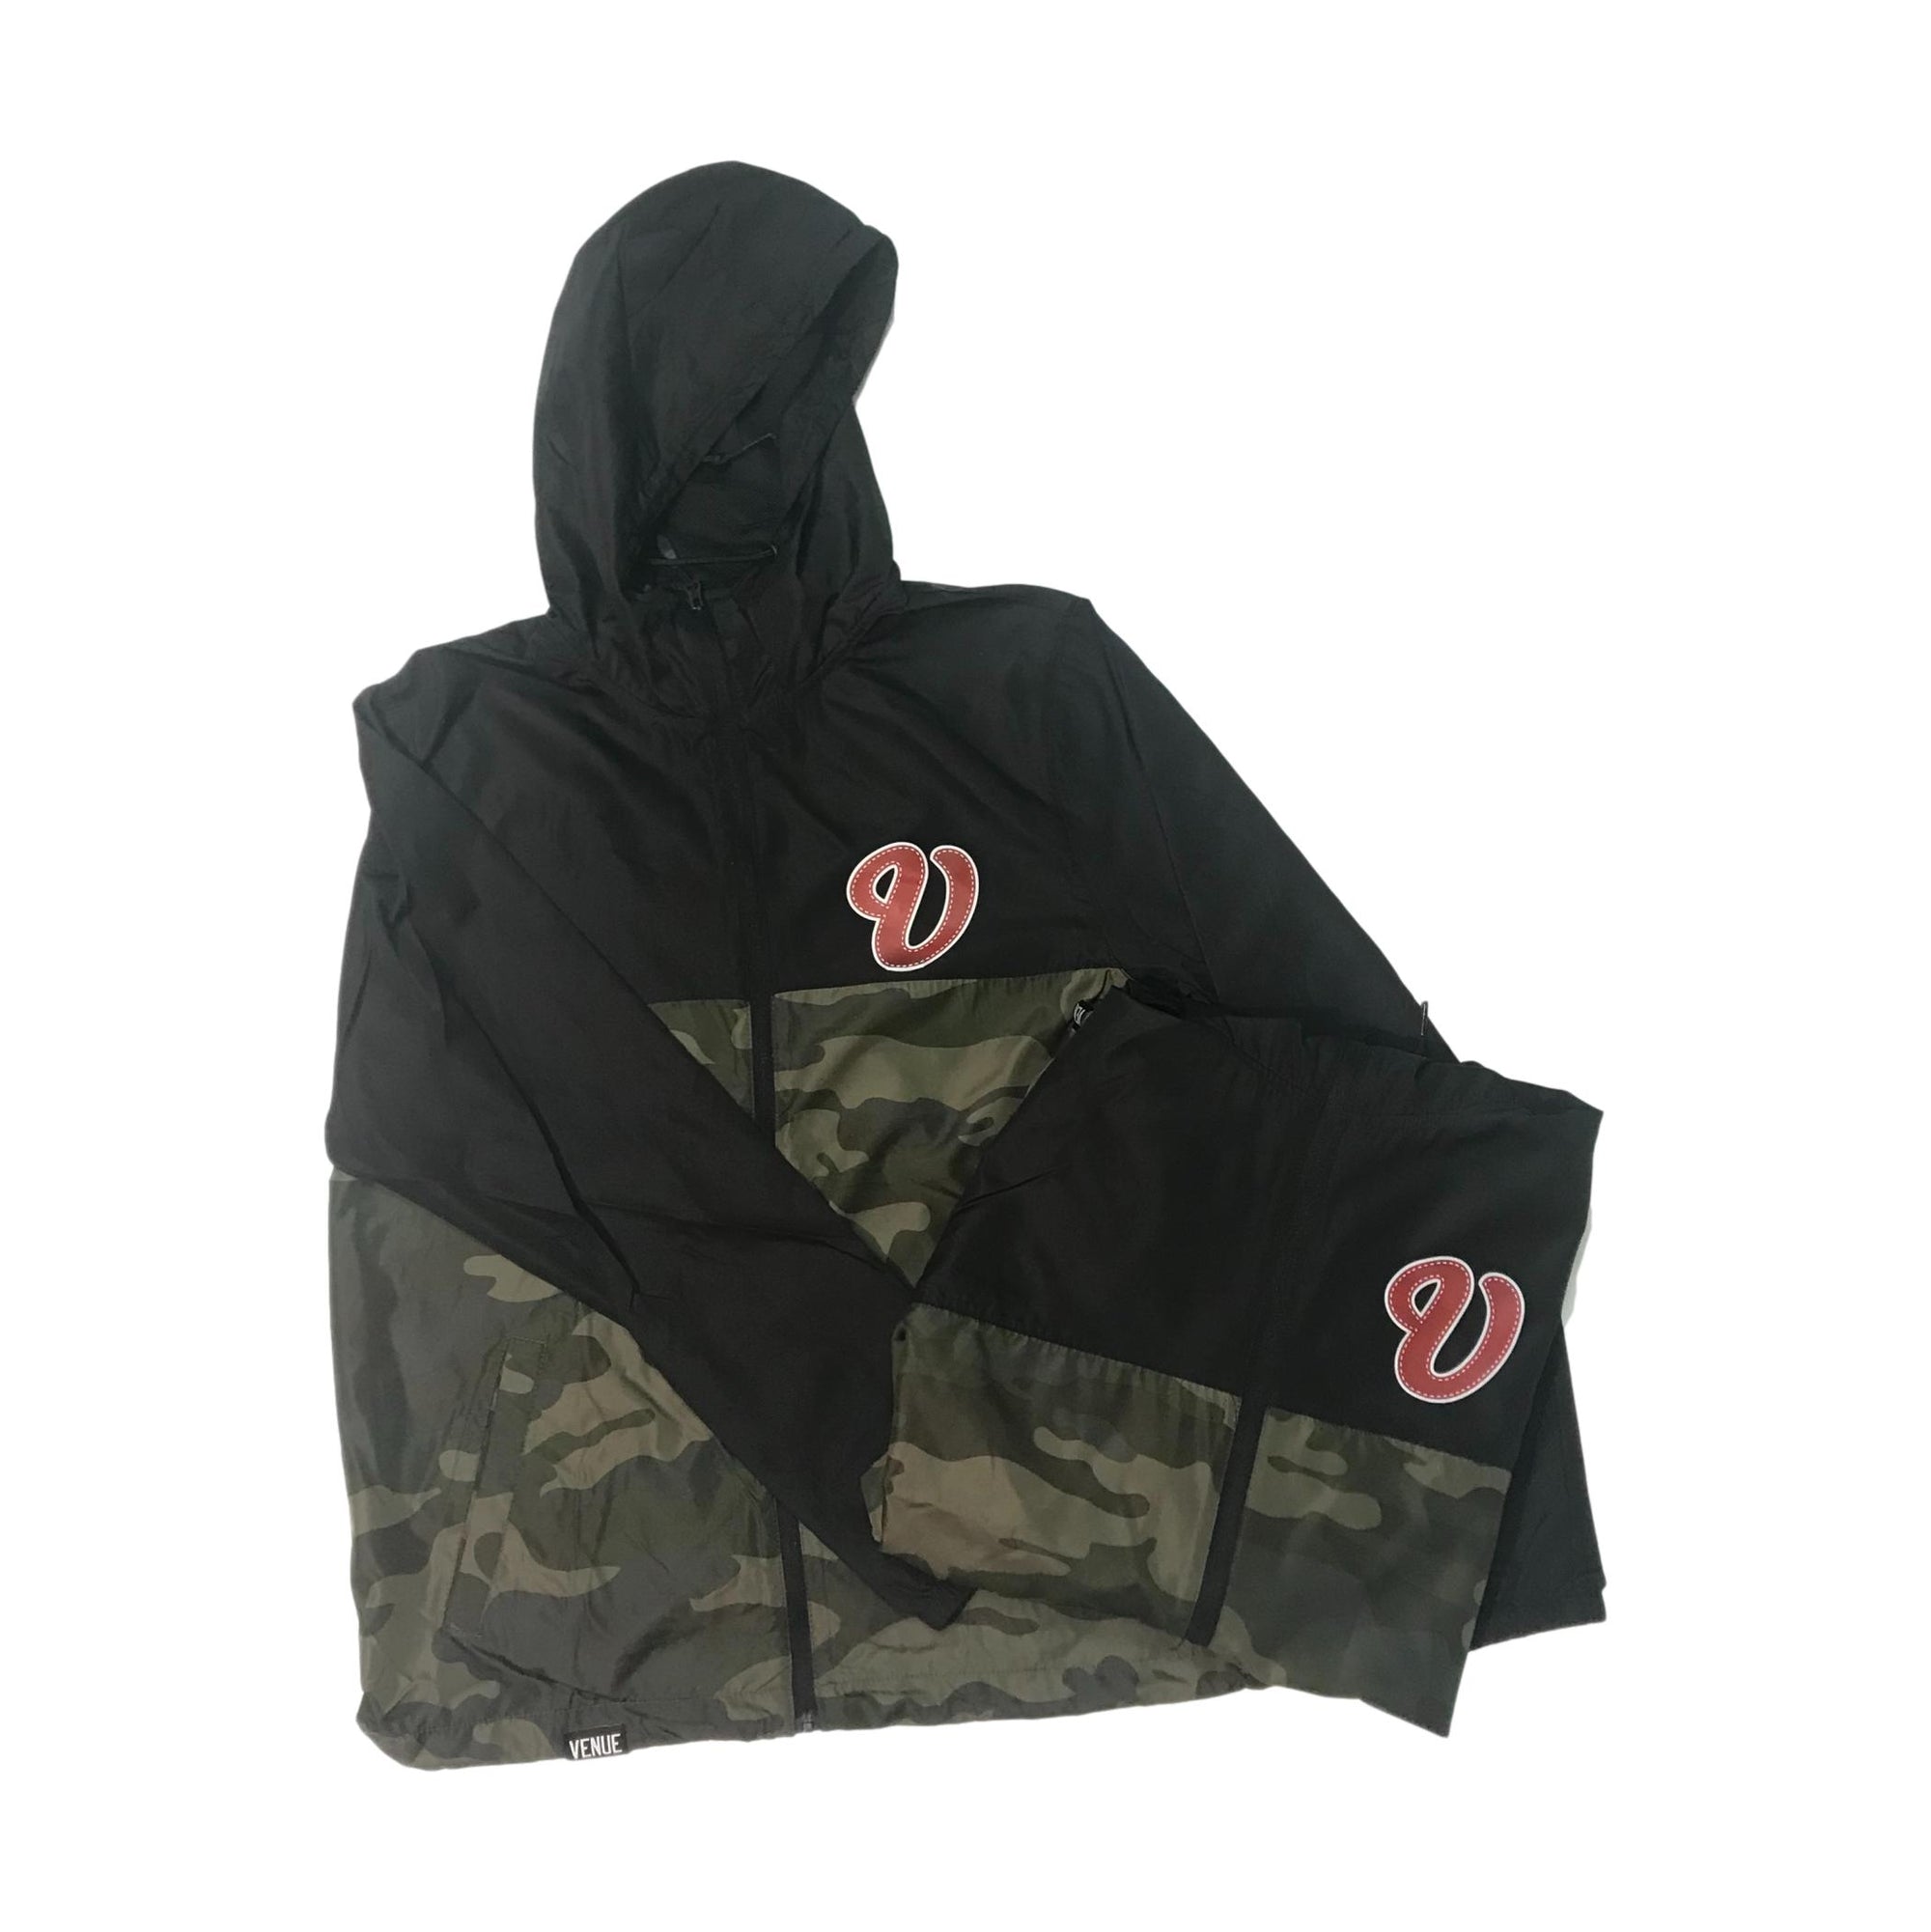 Venue Hooded Zip Windbreaker - Black/Forest Camo w/Red V Logo